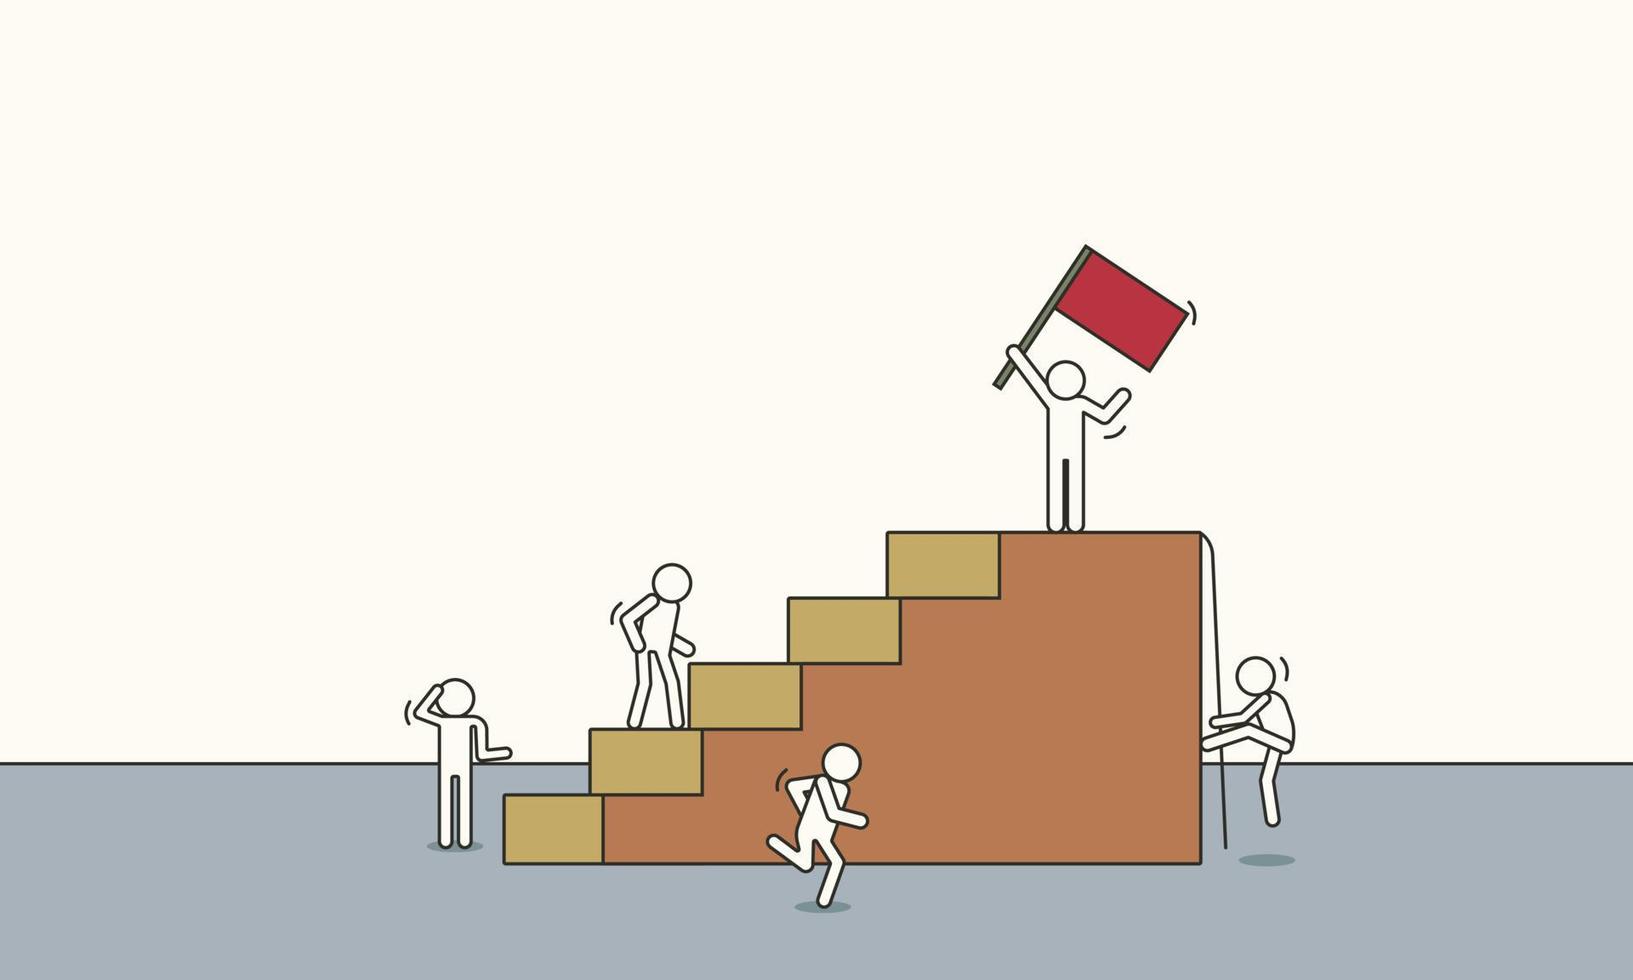 doodle líder escalada vector boceto éxito empresarial ilustración. equipo de personas con liderazgo dibujos animados trabajo en equipo logro progreso con bandera roja.